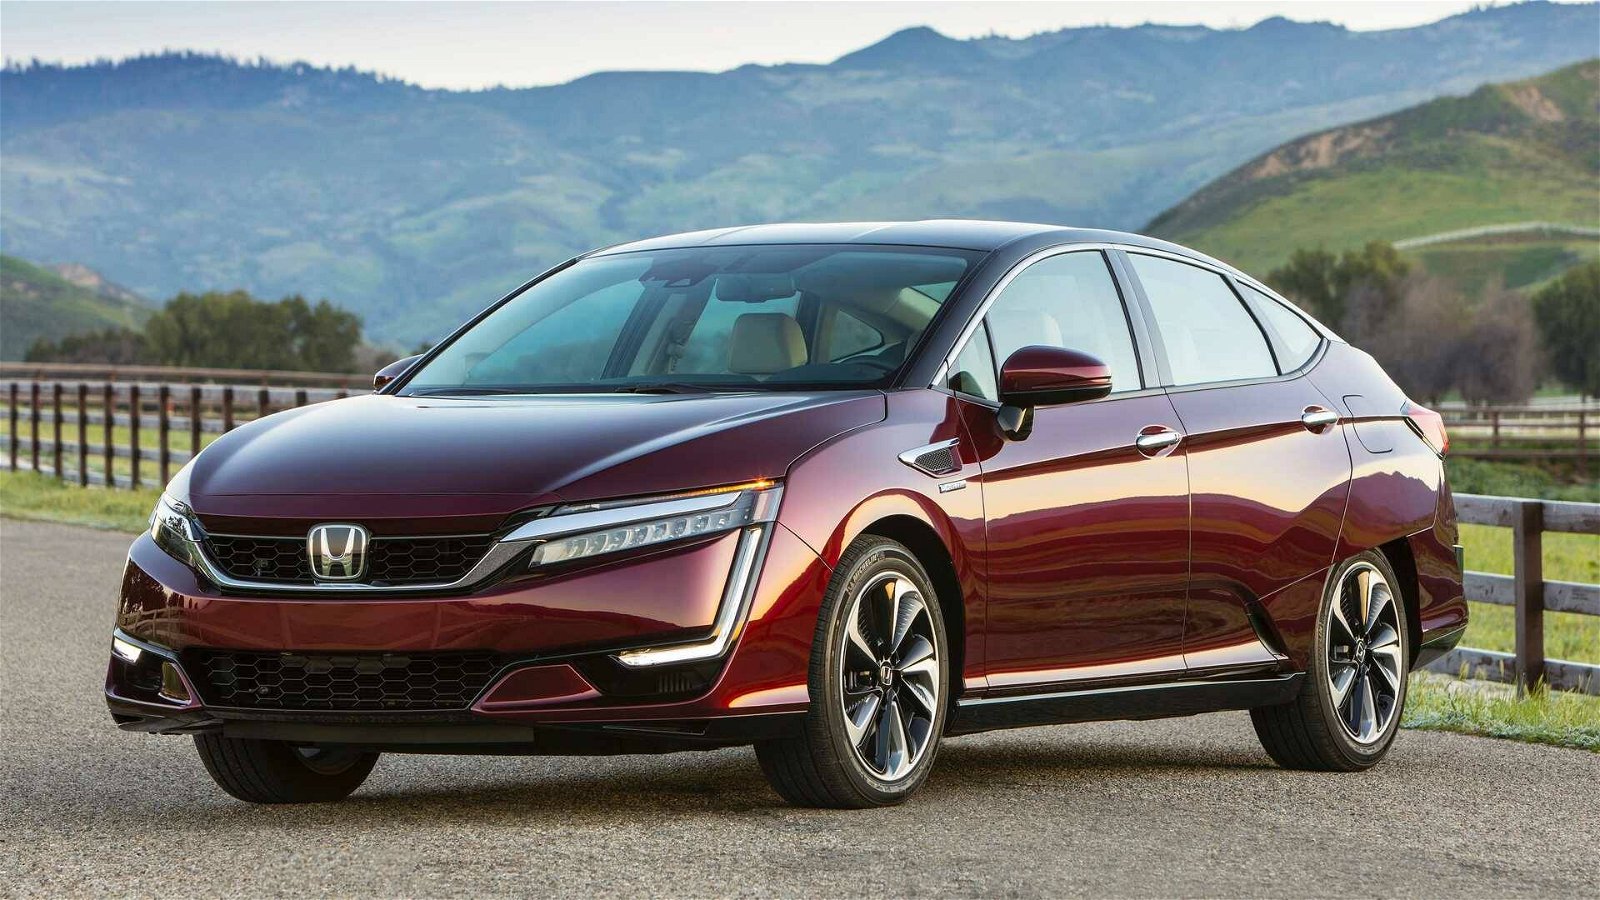 Immagine di Auto a idrogeno: Honda lascia il mercato con Clarify